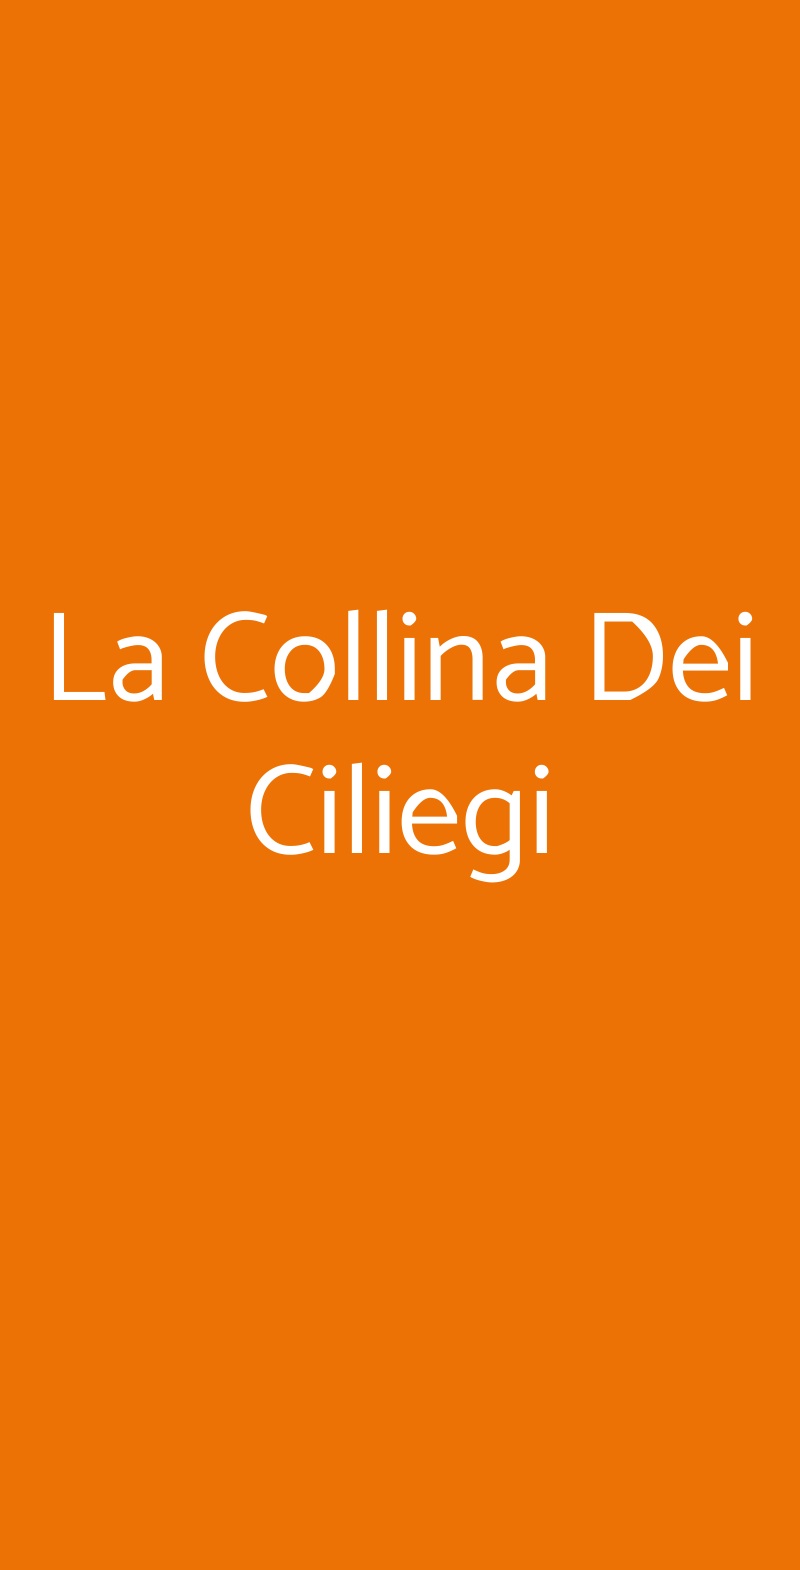 La Collina Dei Ciliegi Milano menù 1 pagina